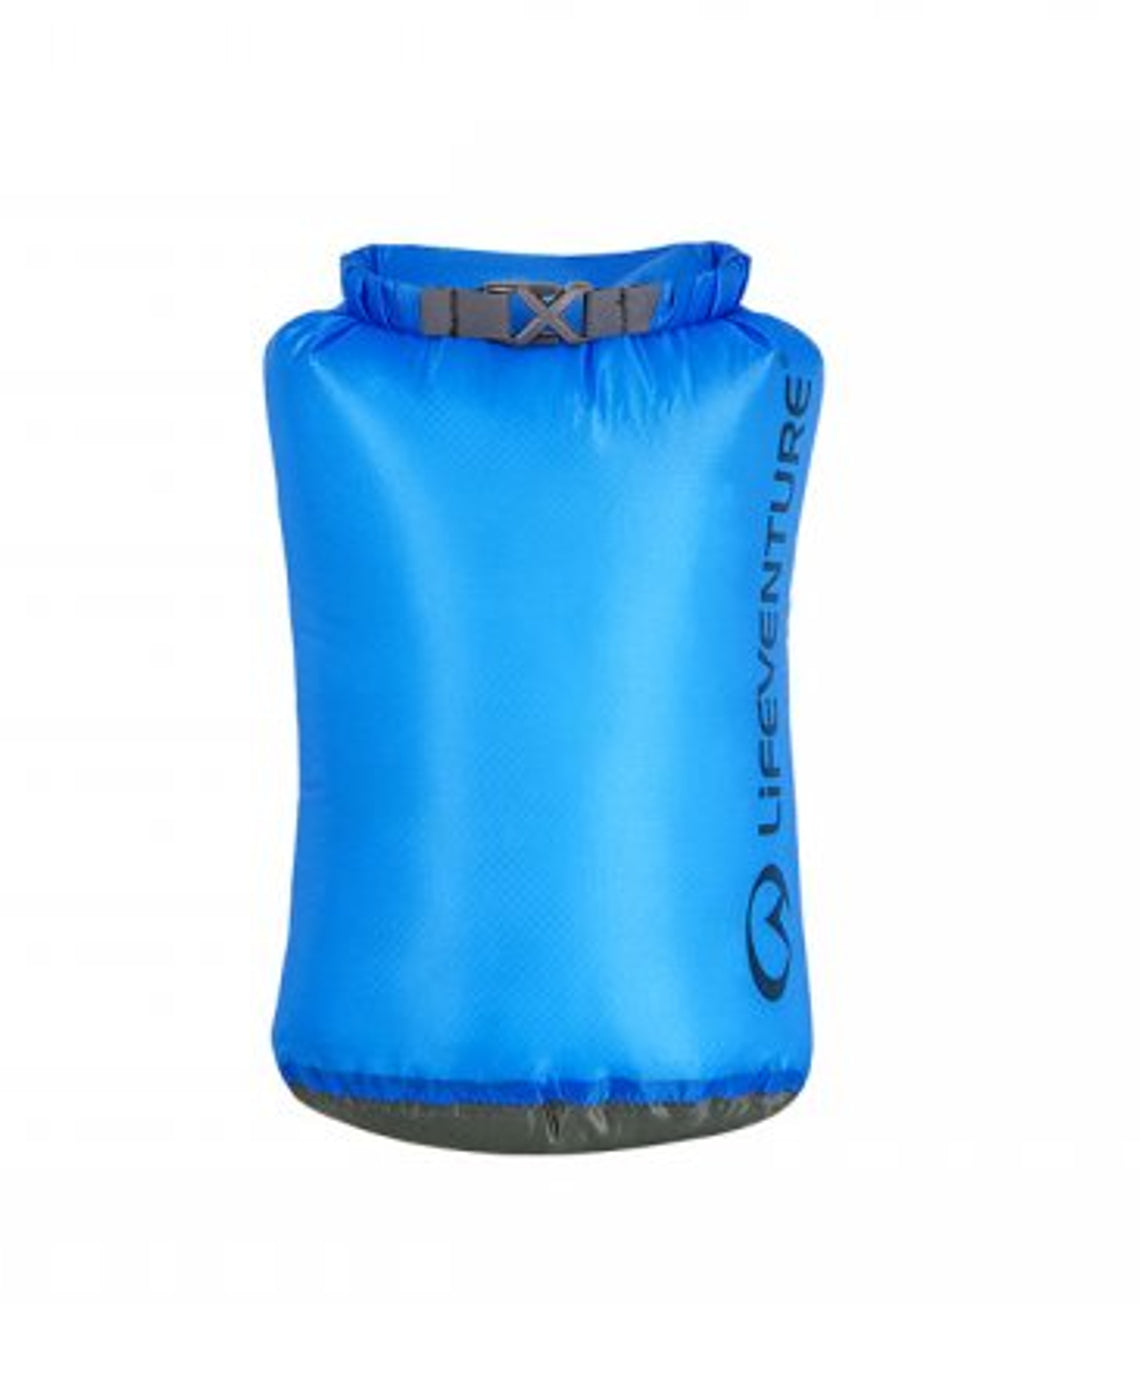 Billede af LifeVenture Ultralight Drybag Blå (5L)